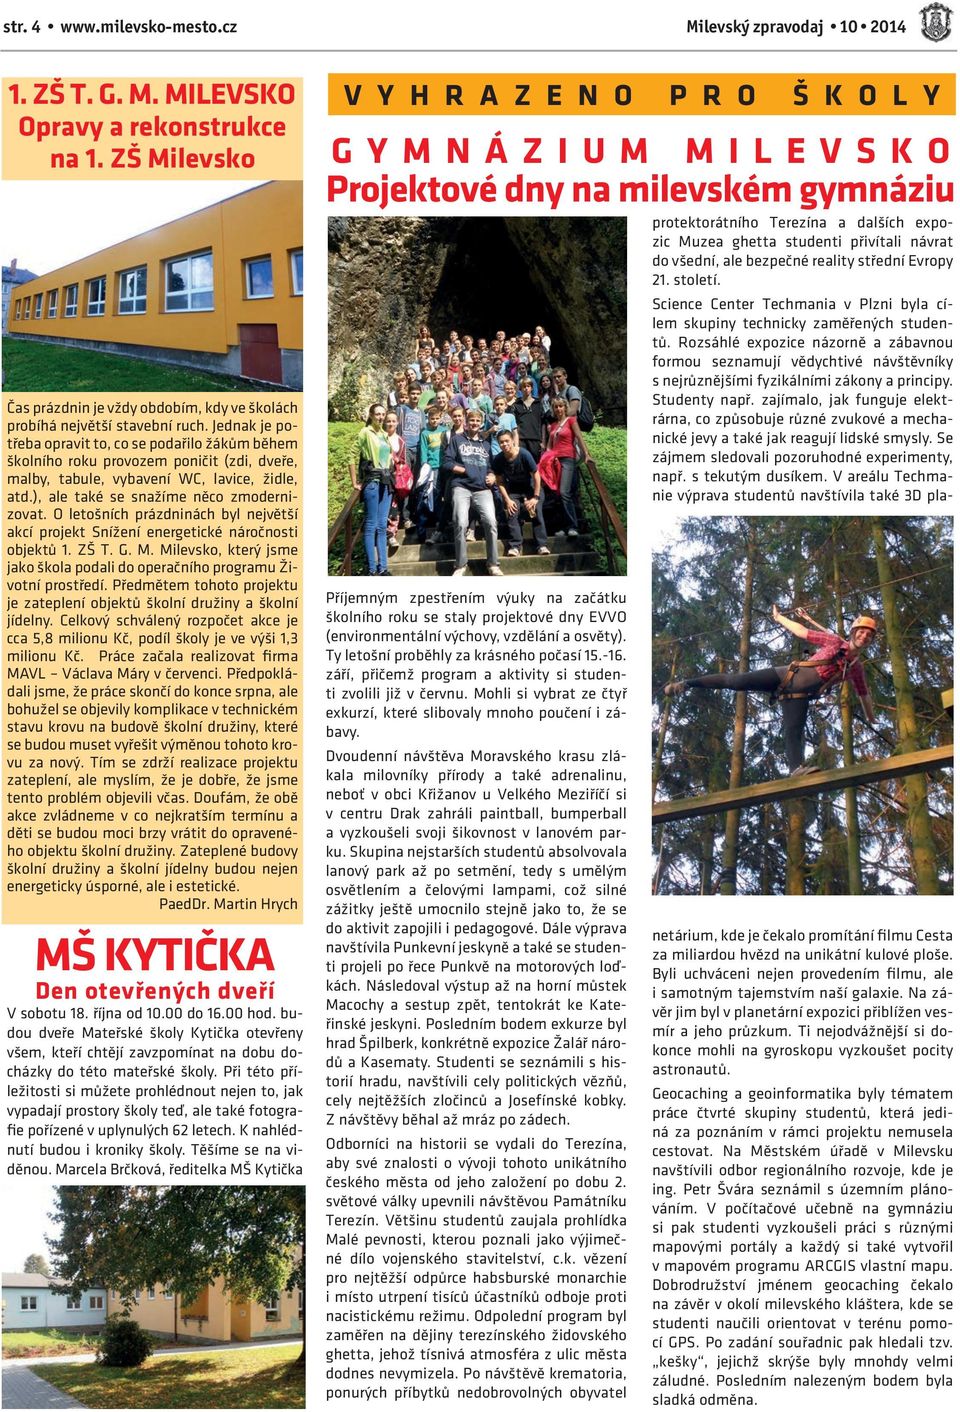 O letošních prázdninách byl největší akcí projekt Snížení energetické náročnosti objektů 1. ZŠ T. G. M. Milevsko, který jsme jako škola podali do operačního programu Životní prostředí.